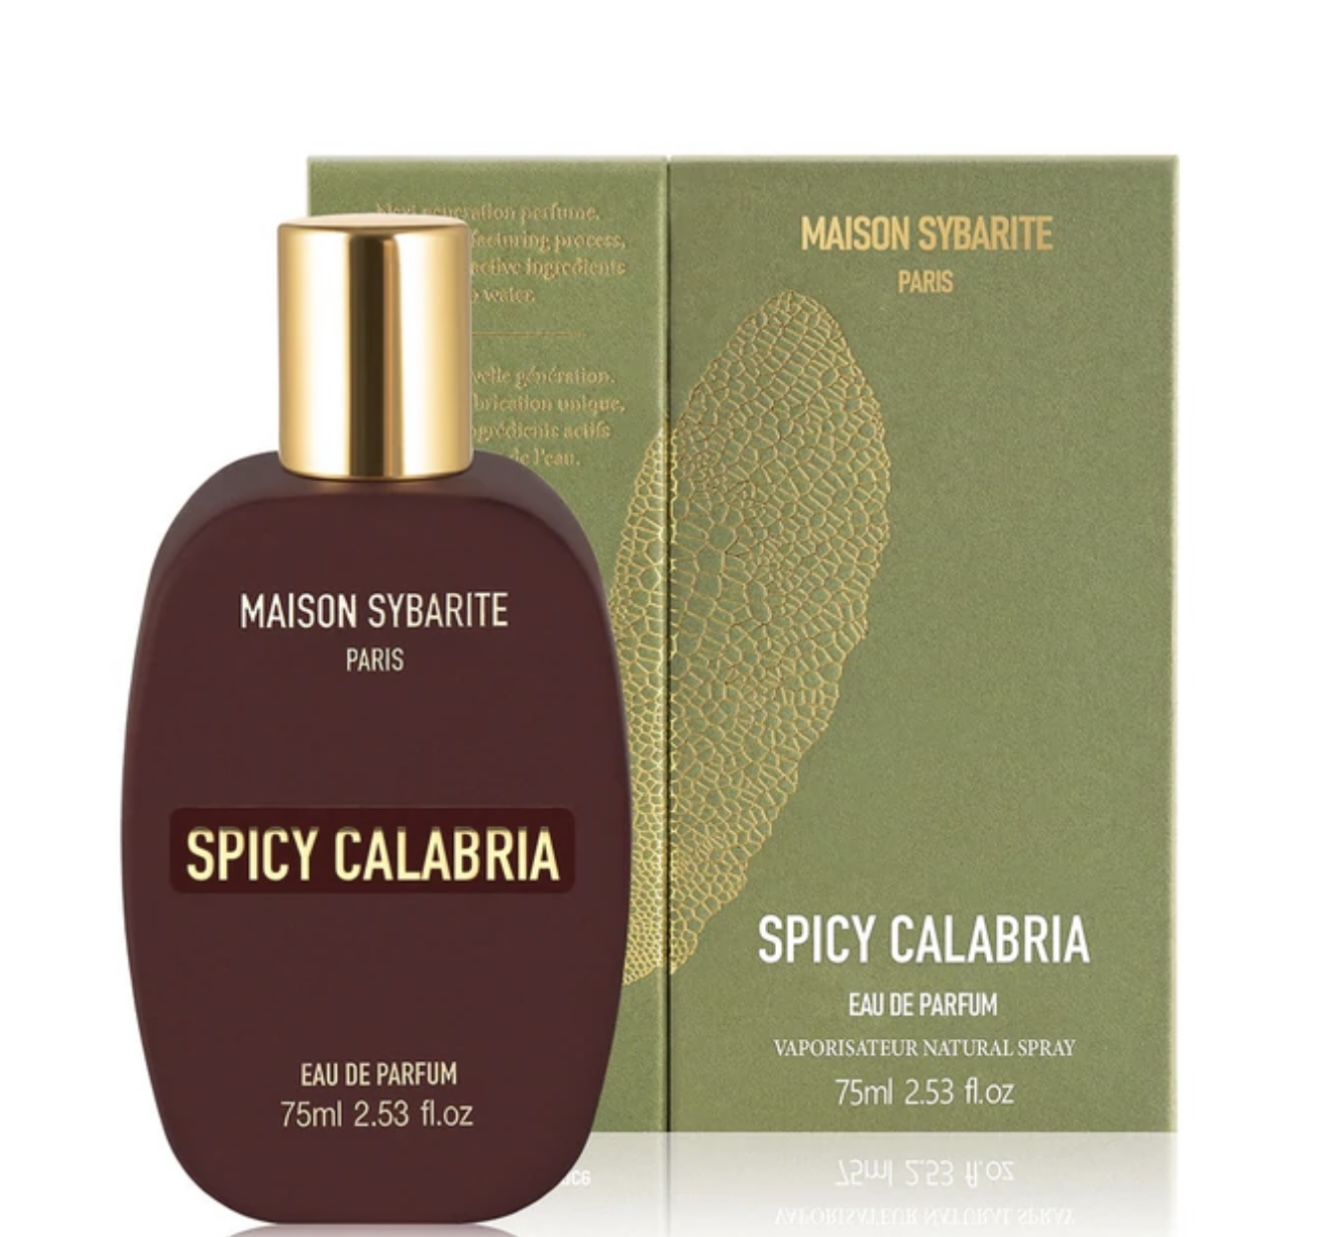 Maison Sybarite Spicy Calabria Eau de Parfum Abfüllung 100 ml